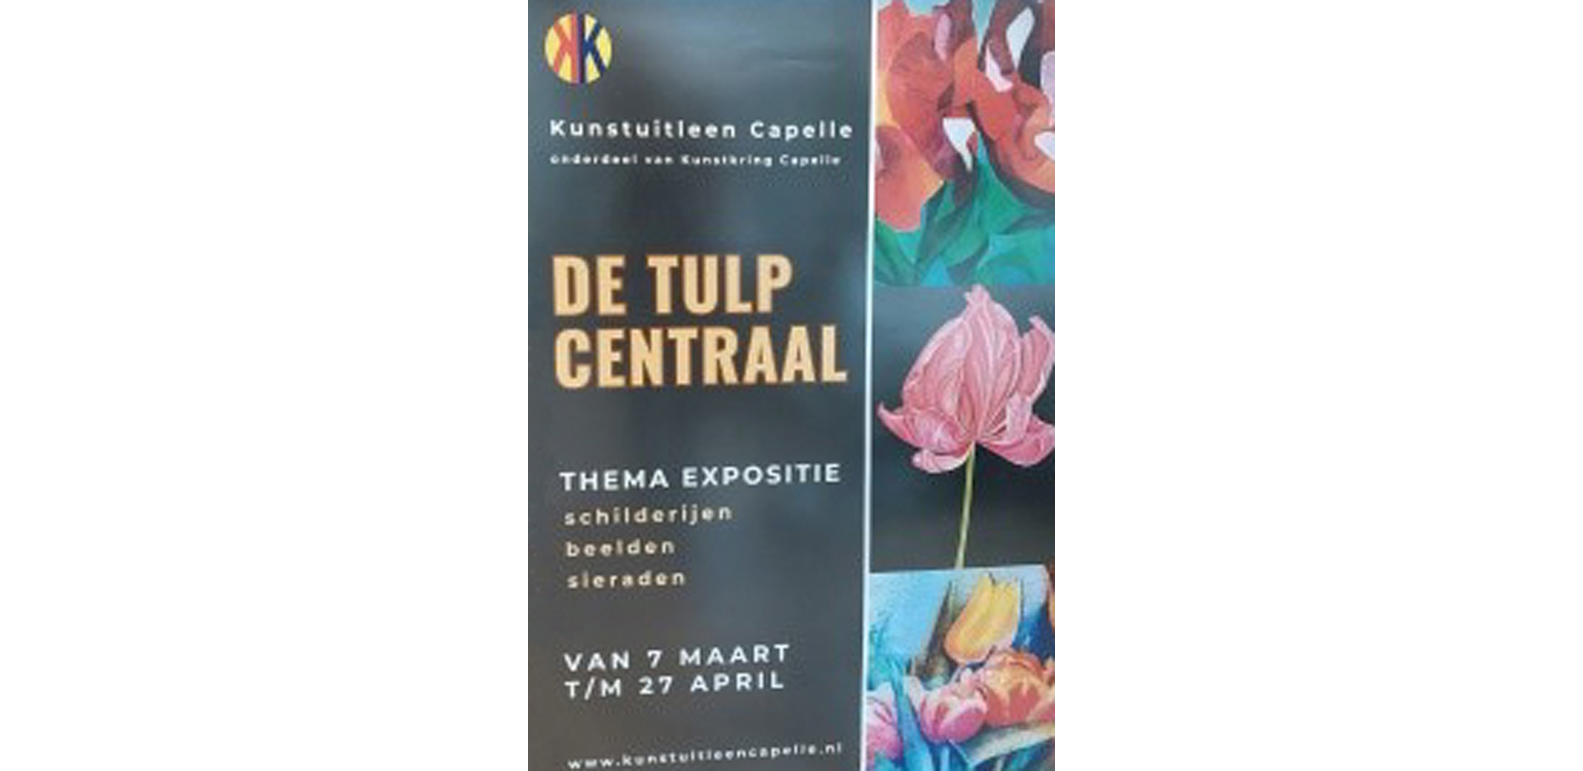 Tulpenmania in Capelle aan den IJssel